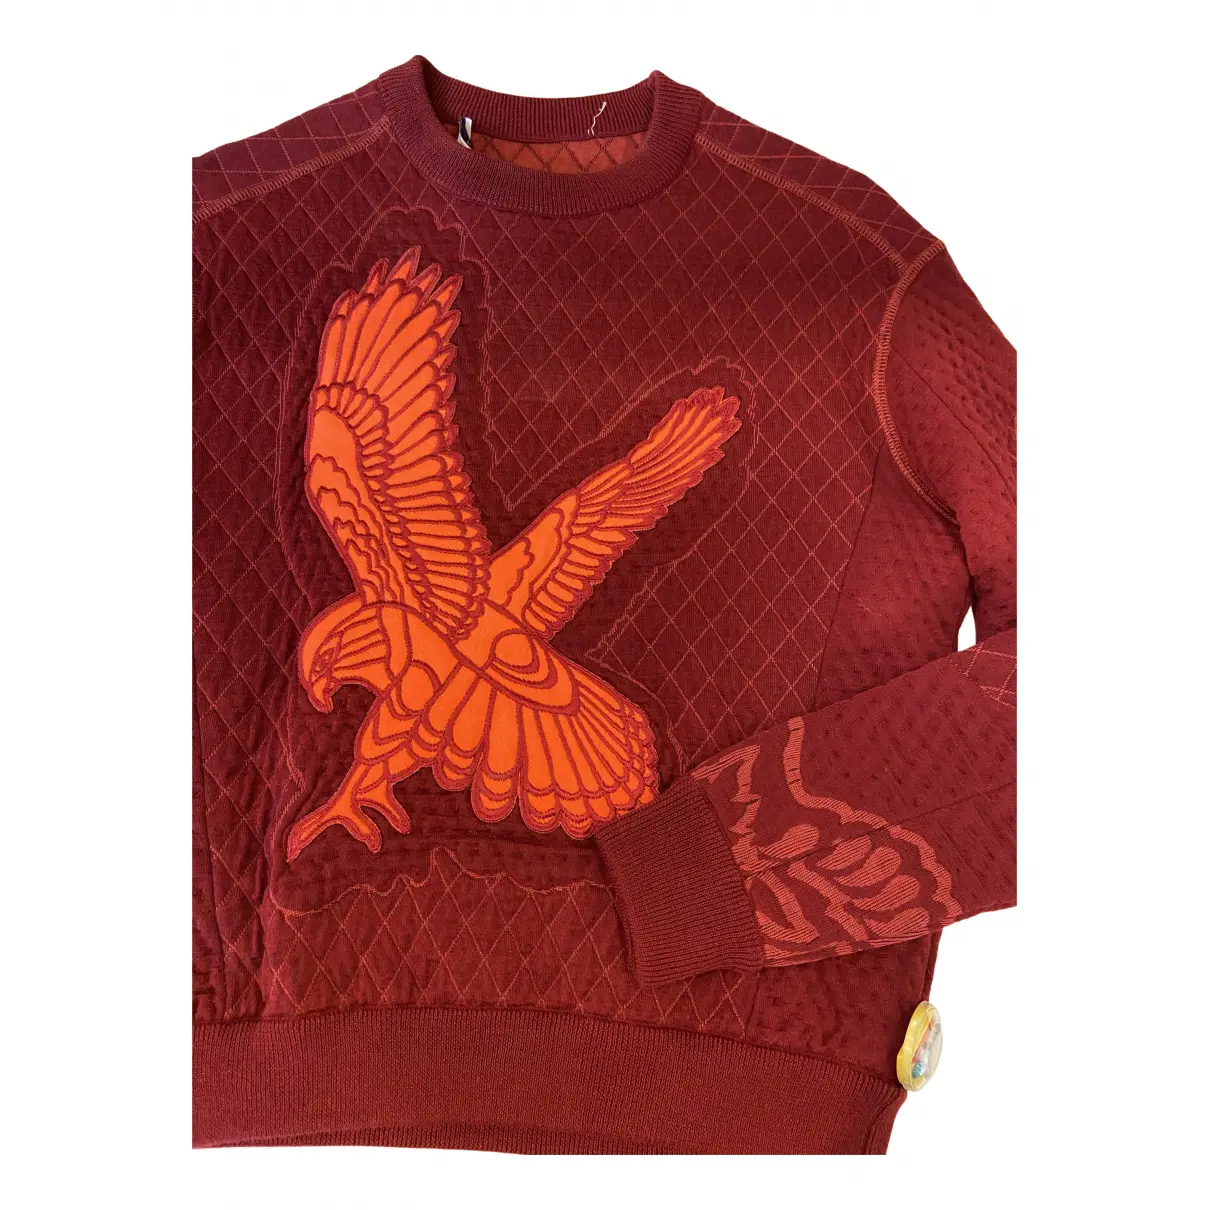 Buy Stella McCartney Red Cotton Knitwear online